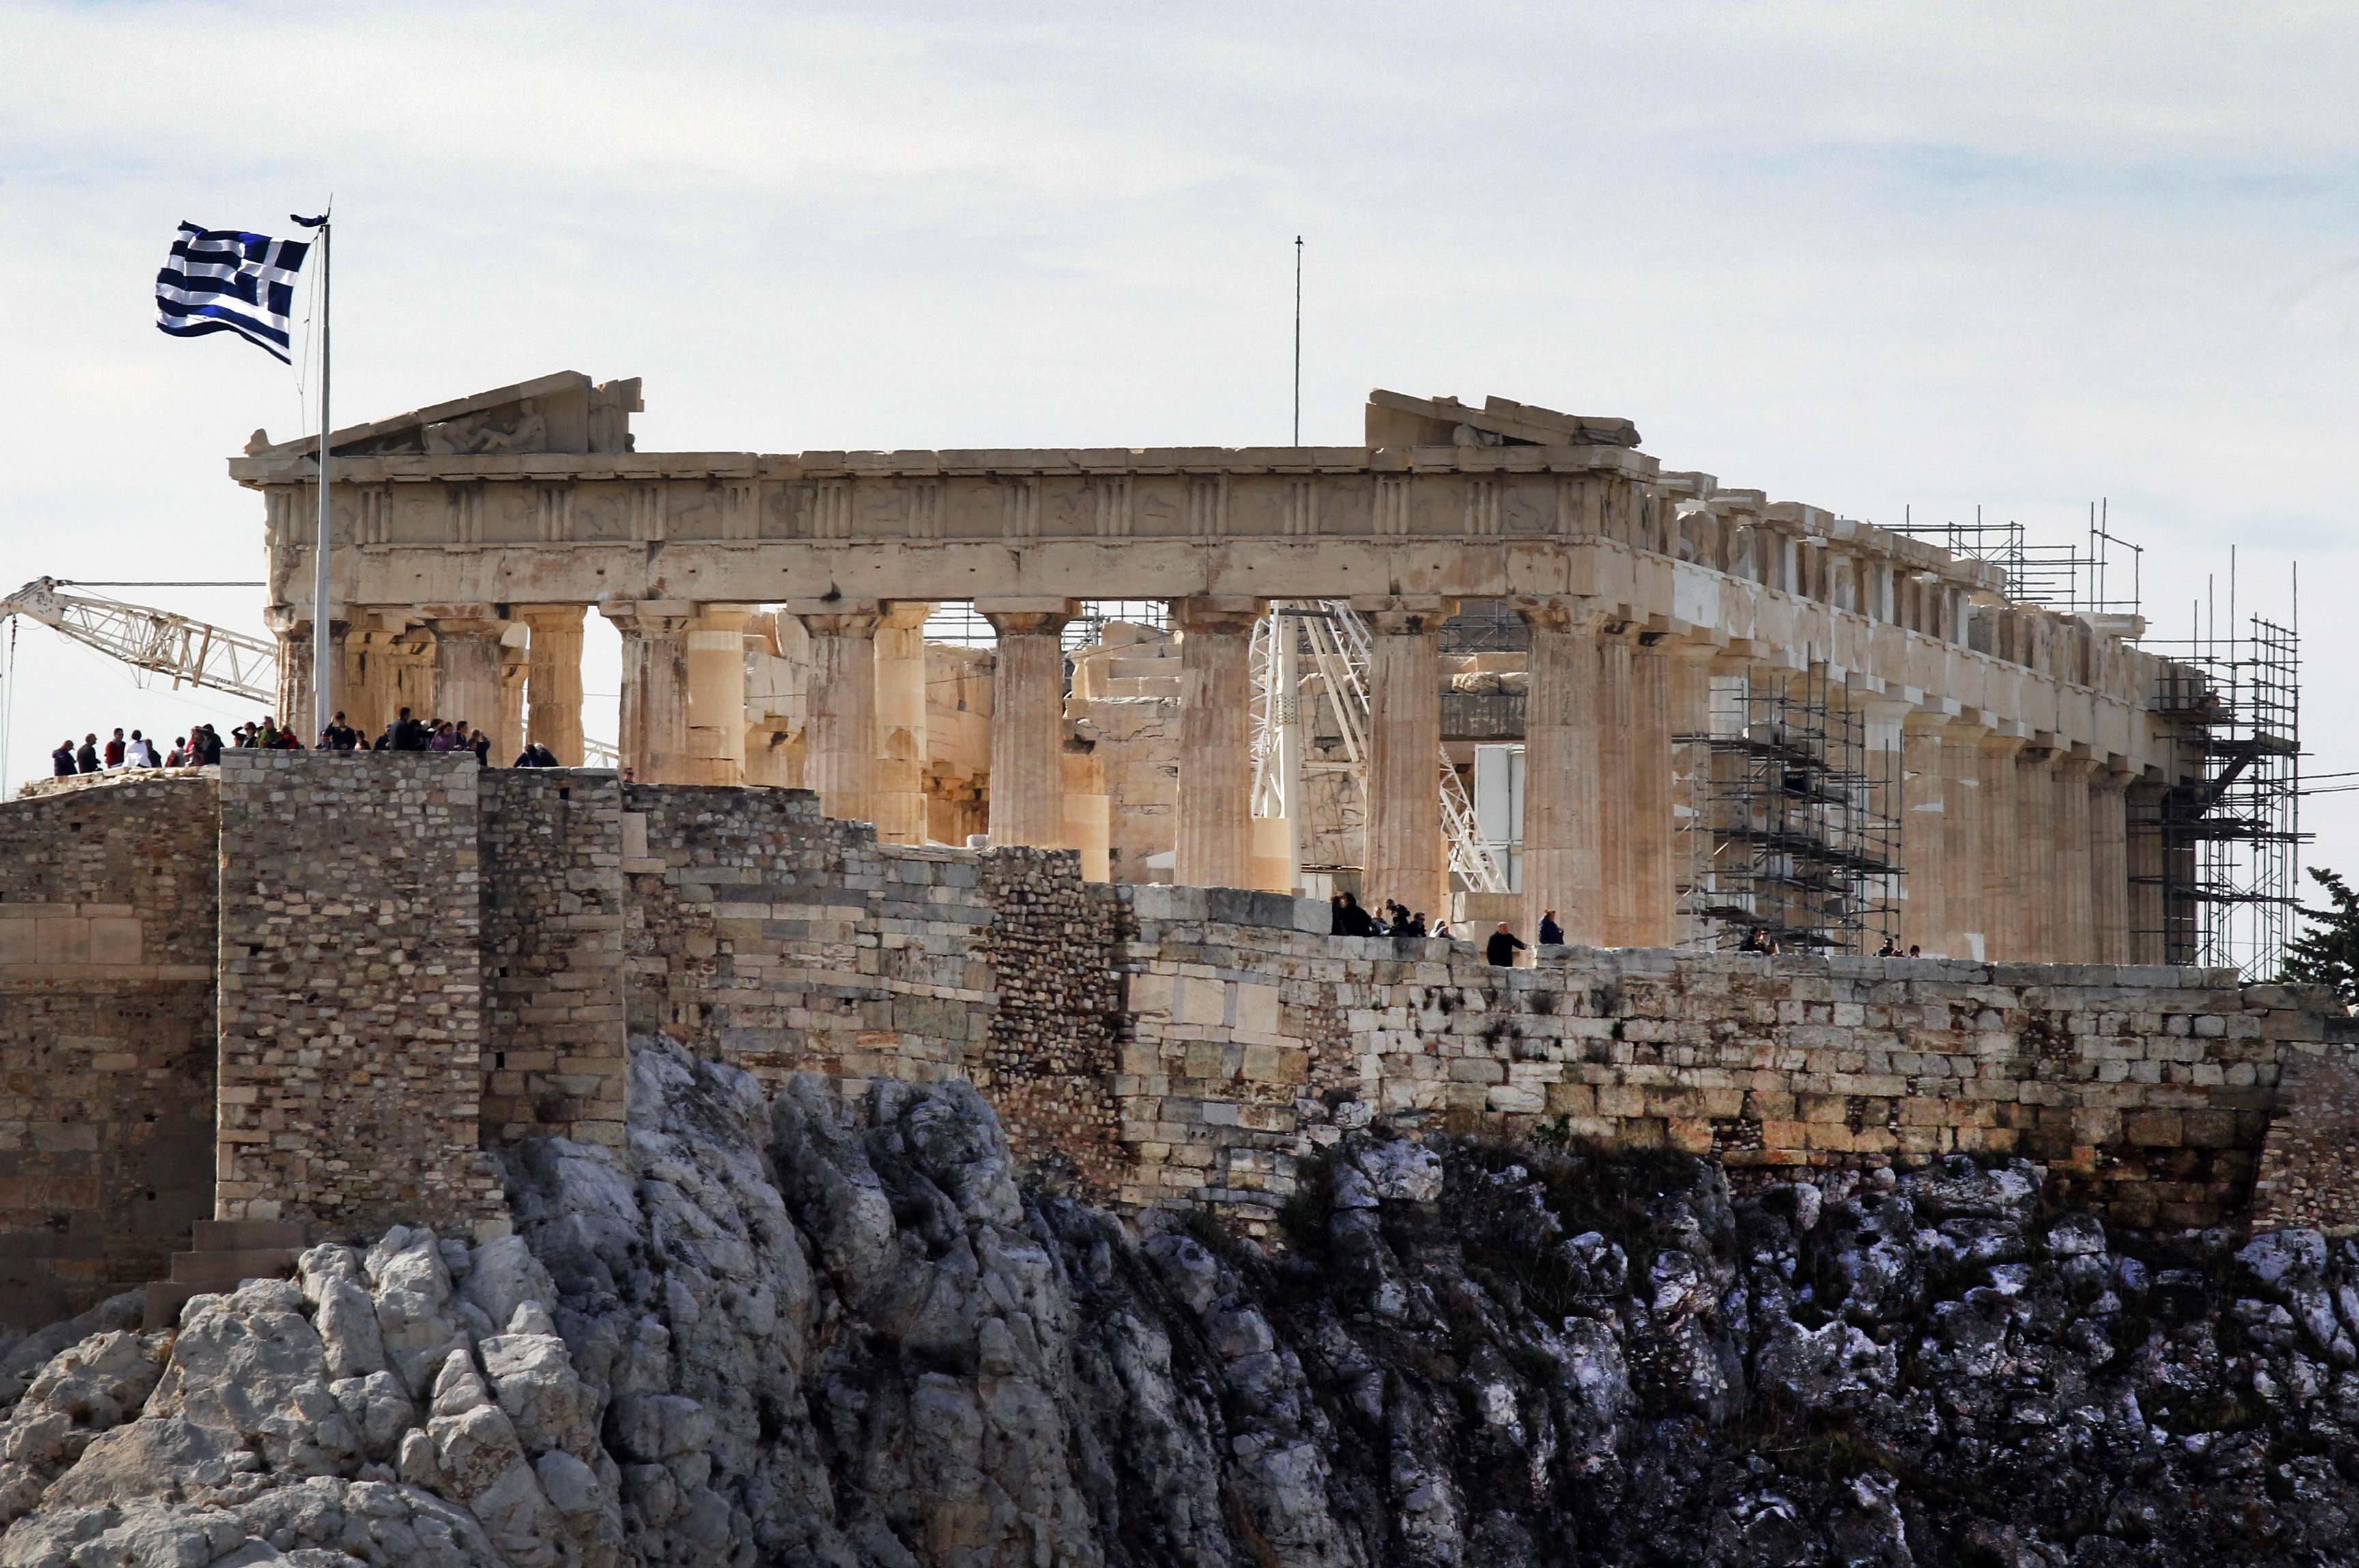 “Η Ελλάδα είναι μικρότερο πρόβλημα για την Ευρωζώνη από ό,τι η Ισπανία και η Ιταλία”